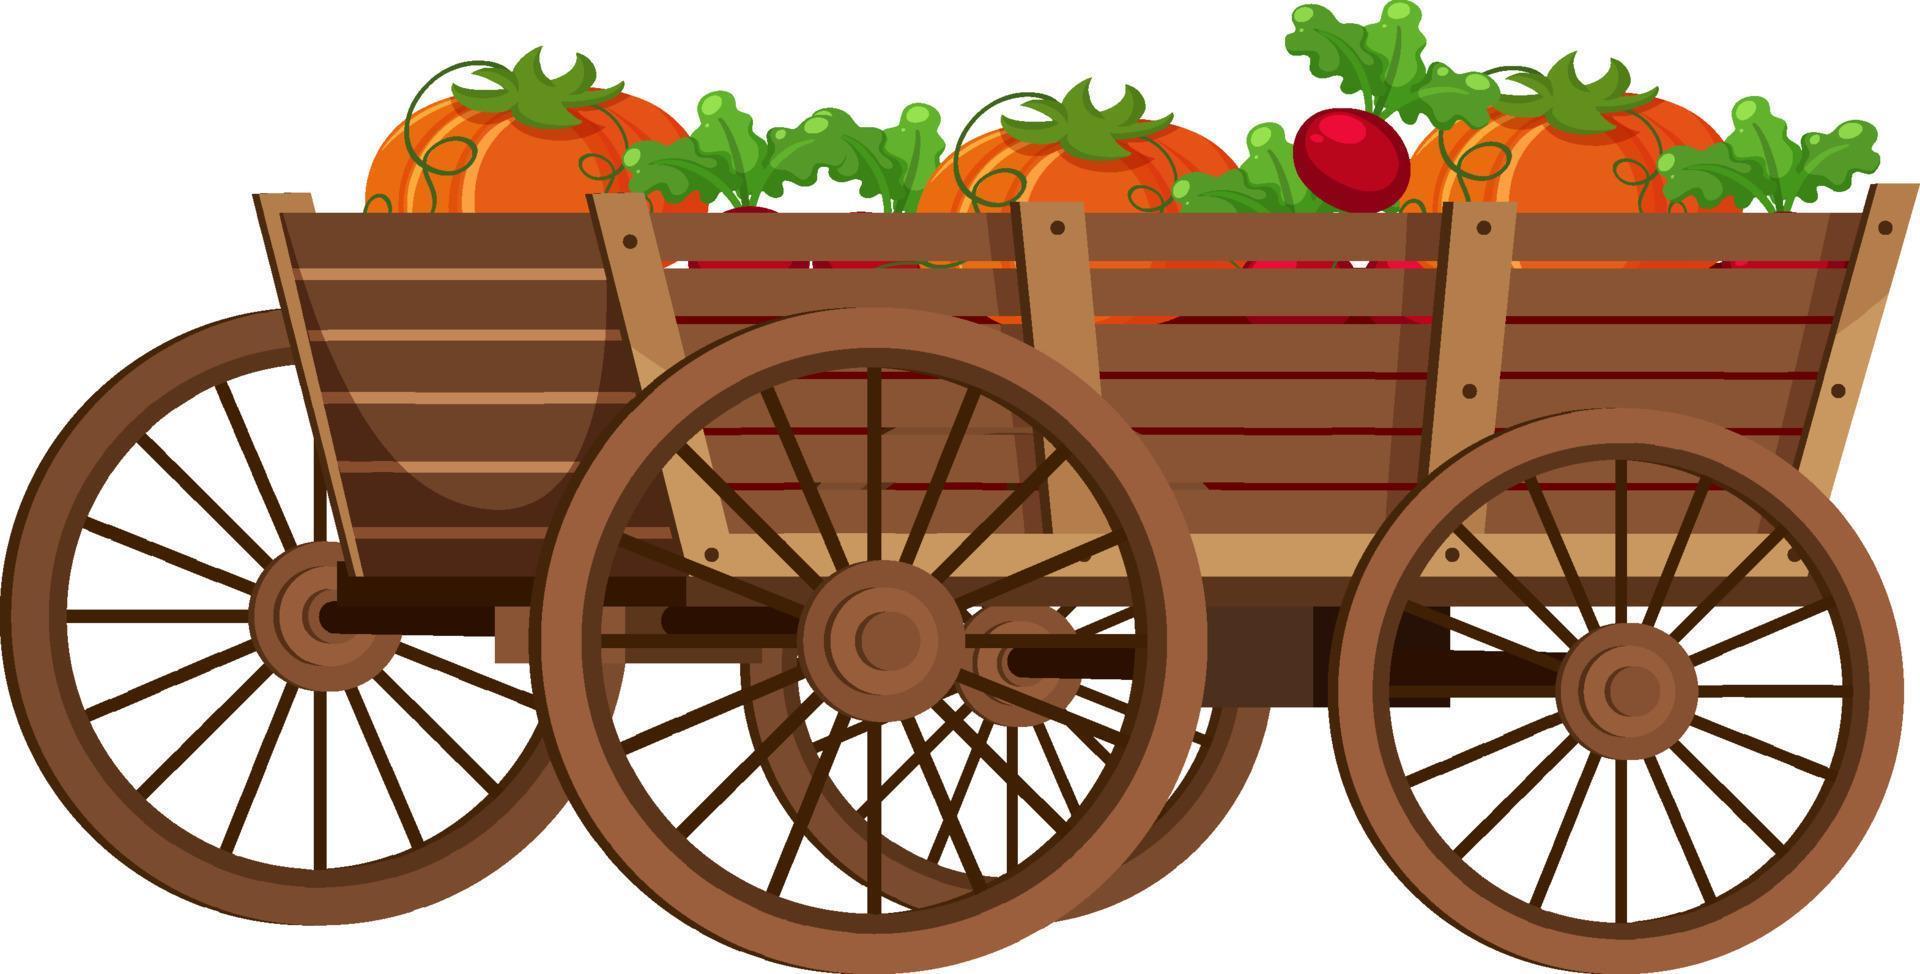 viele Früchte im mittelalterlichen Holzwagen vektor